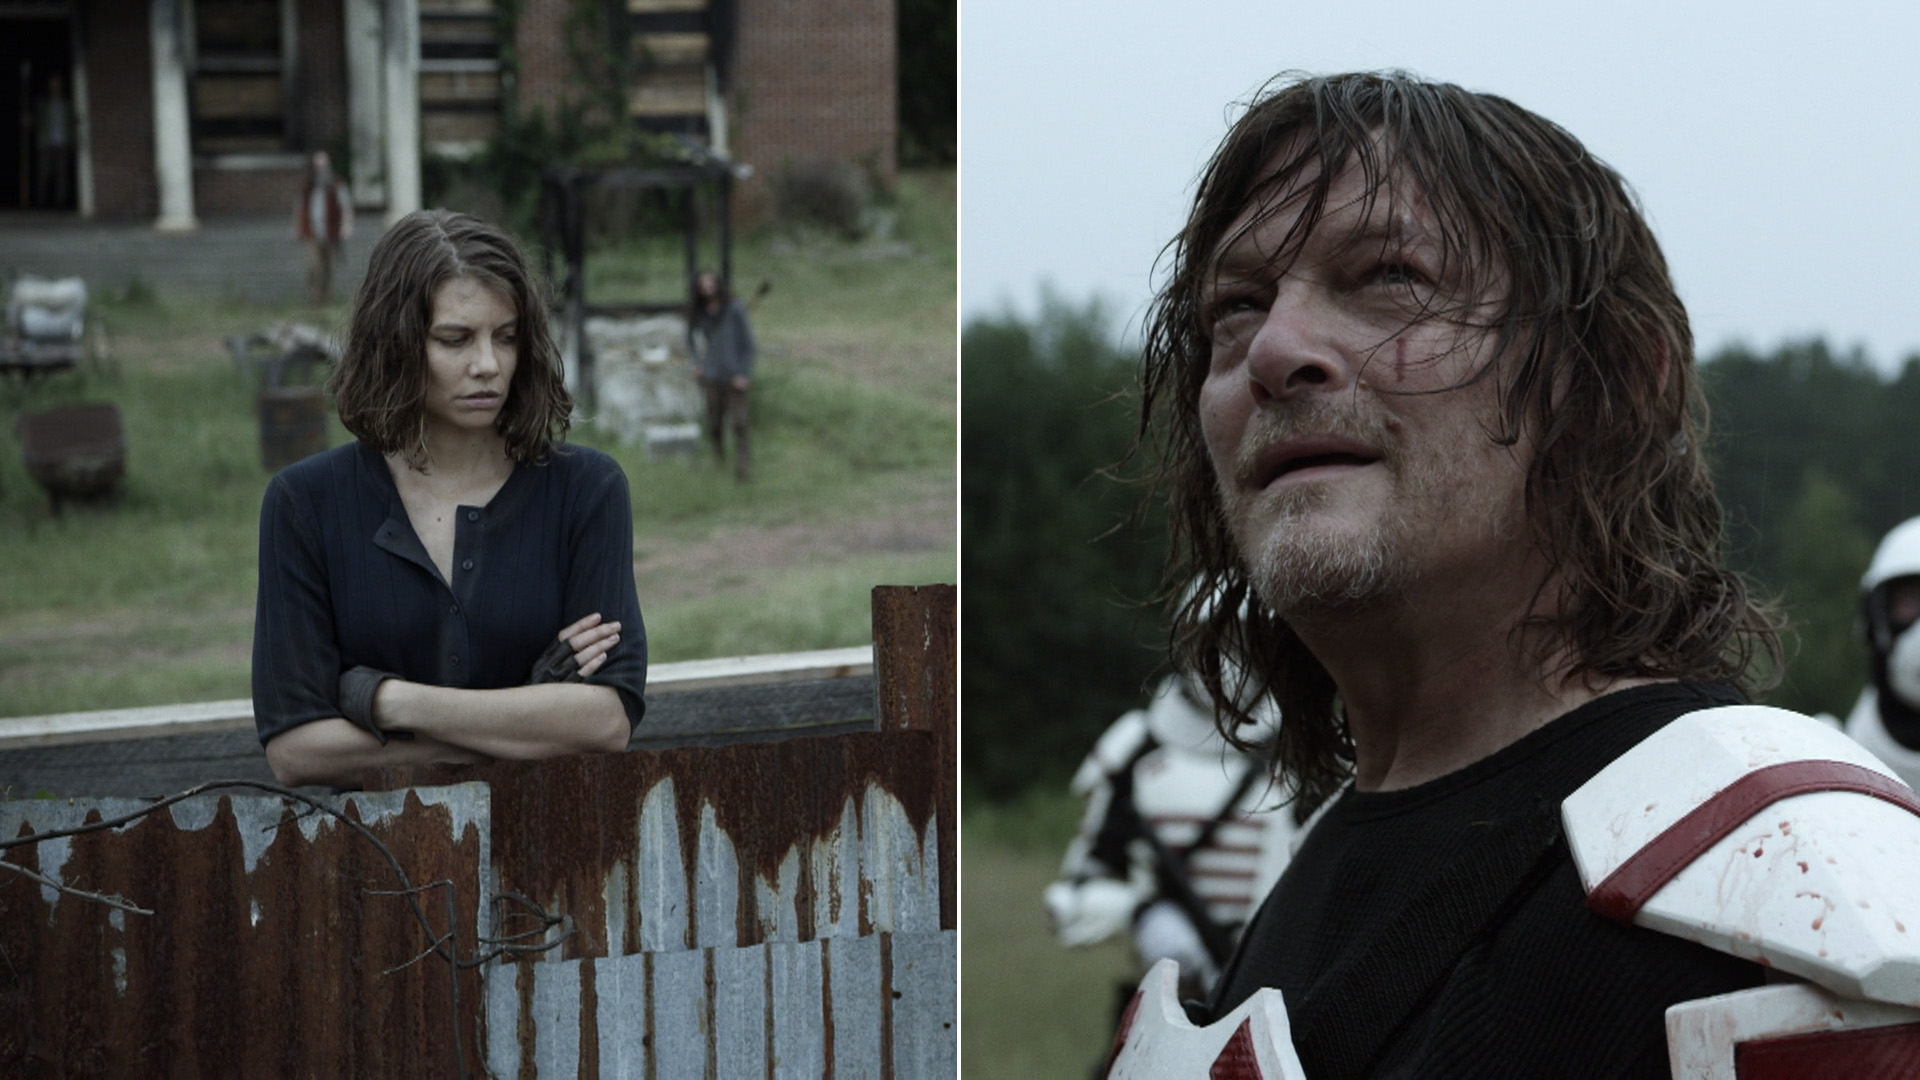 Daryl e Maggie se encarando em cena do episódio 9 da 11ª temporada de The Walking Dead.